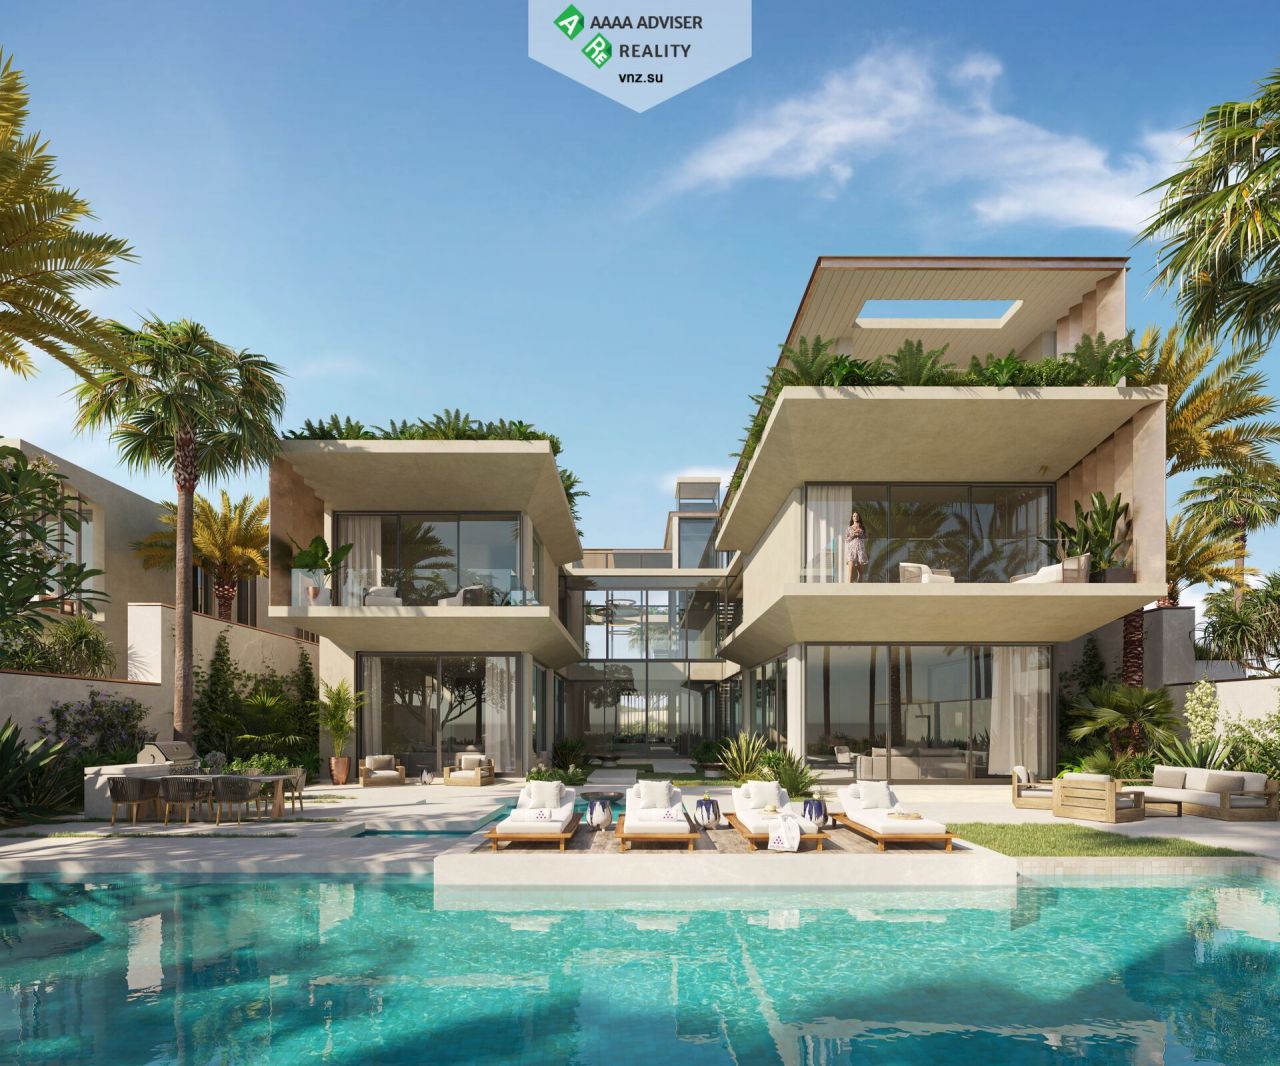 Villa in Dubai, UAE, 1 486 sq.m - picture 1